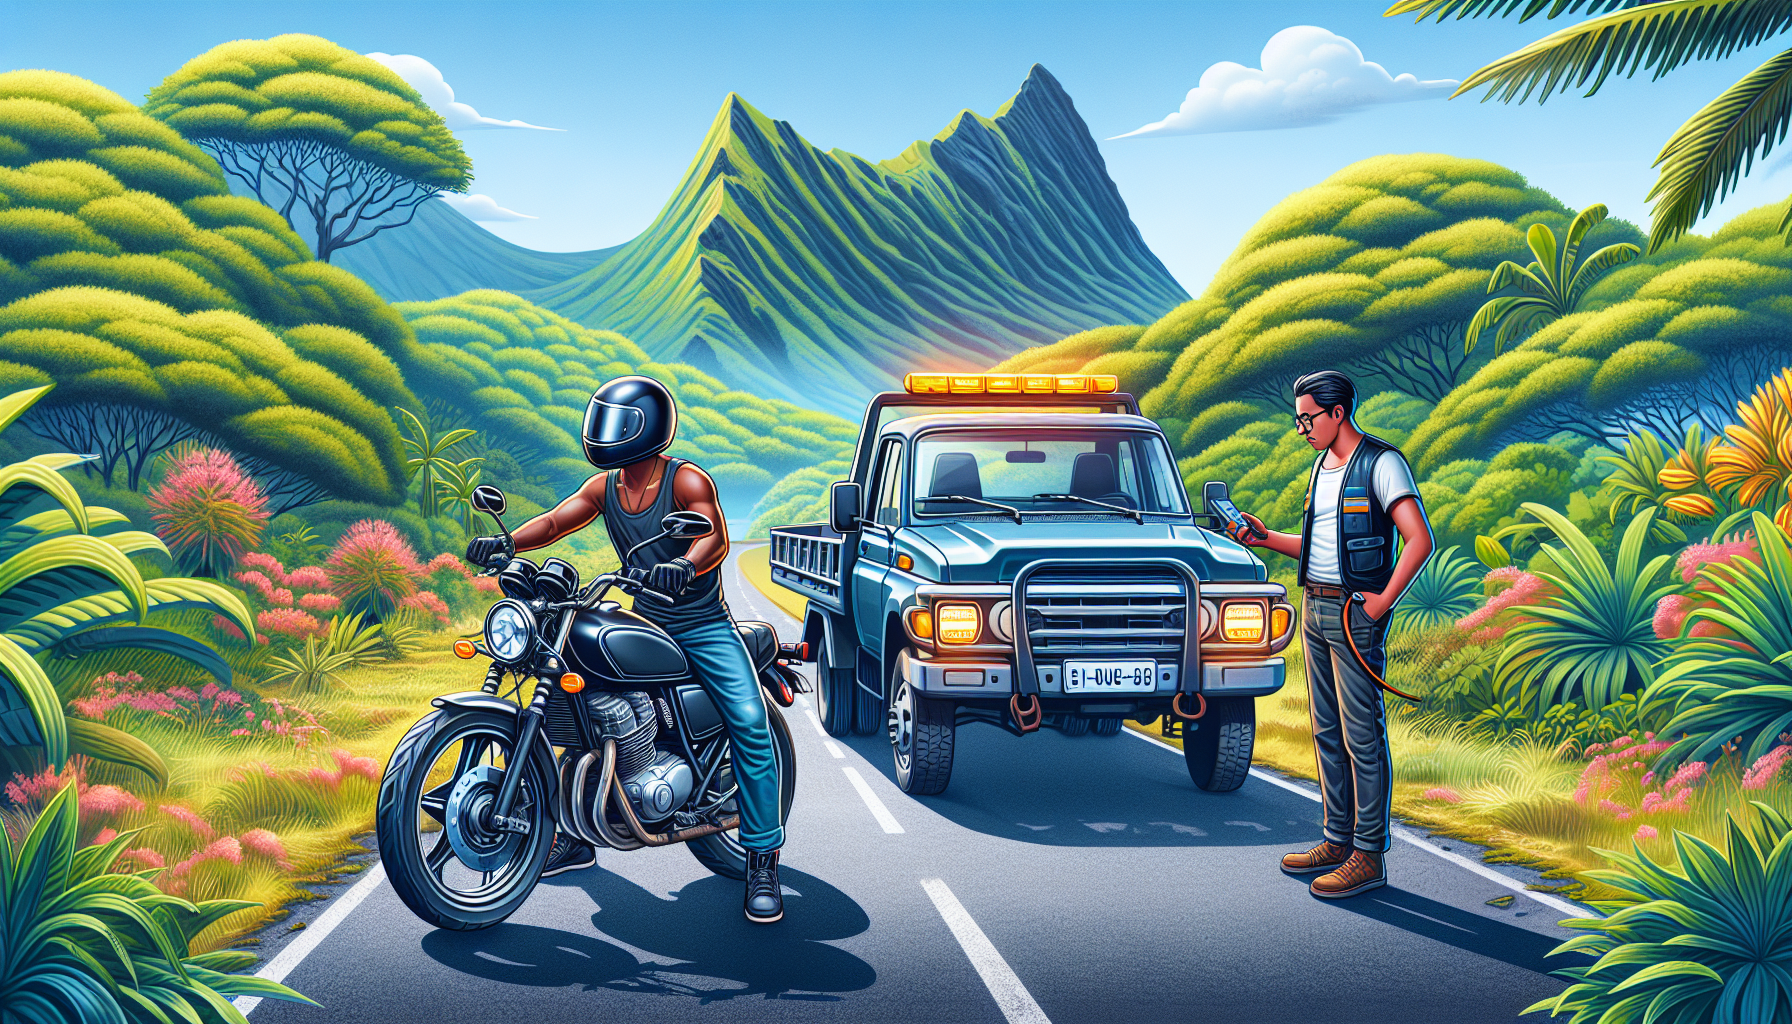 découvrez comment fonctionne le dépannage pour les motos assurées à la réunion avec notre assurance moto. obtenez une assistance rapide et efficace en cas de problème sur la route.